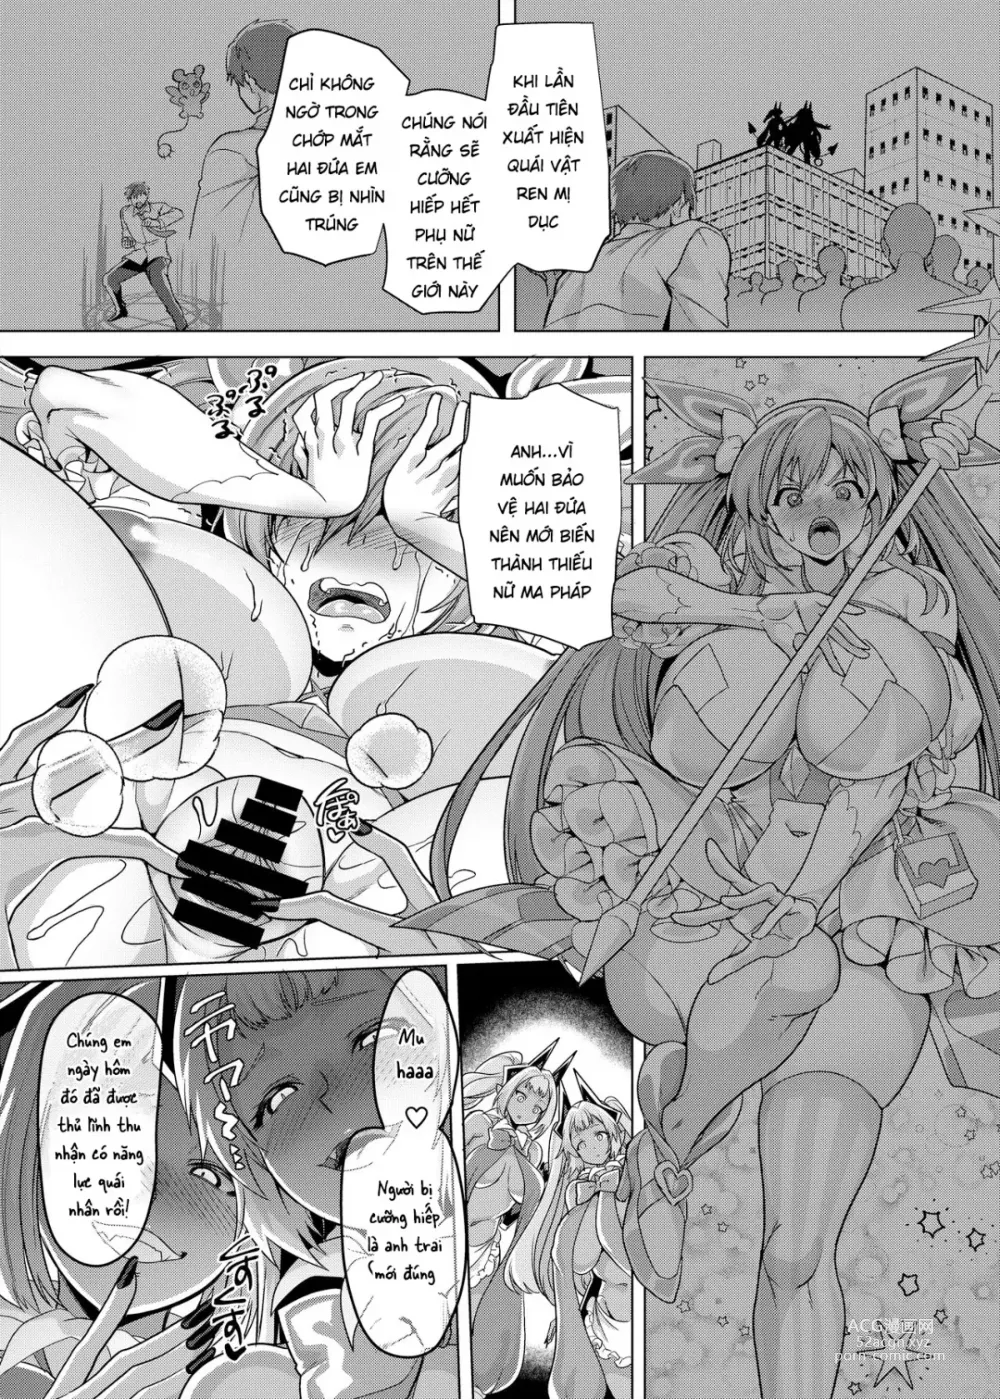 Page 8 of doujinshi Thiếu Nữ Ma Pháp Và Hành Trình Giải Cứu Em Gái